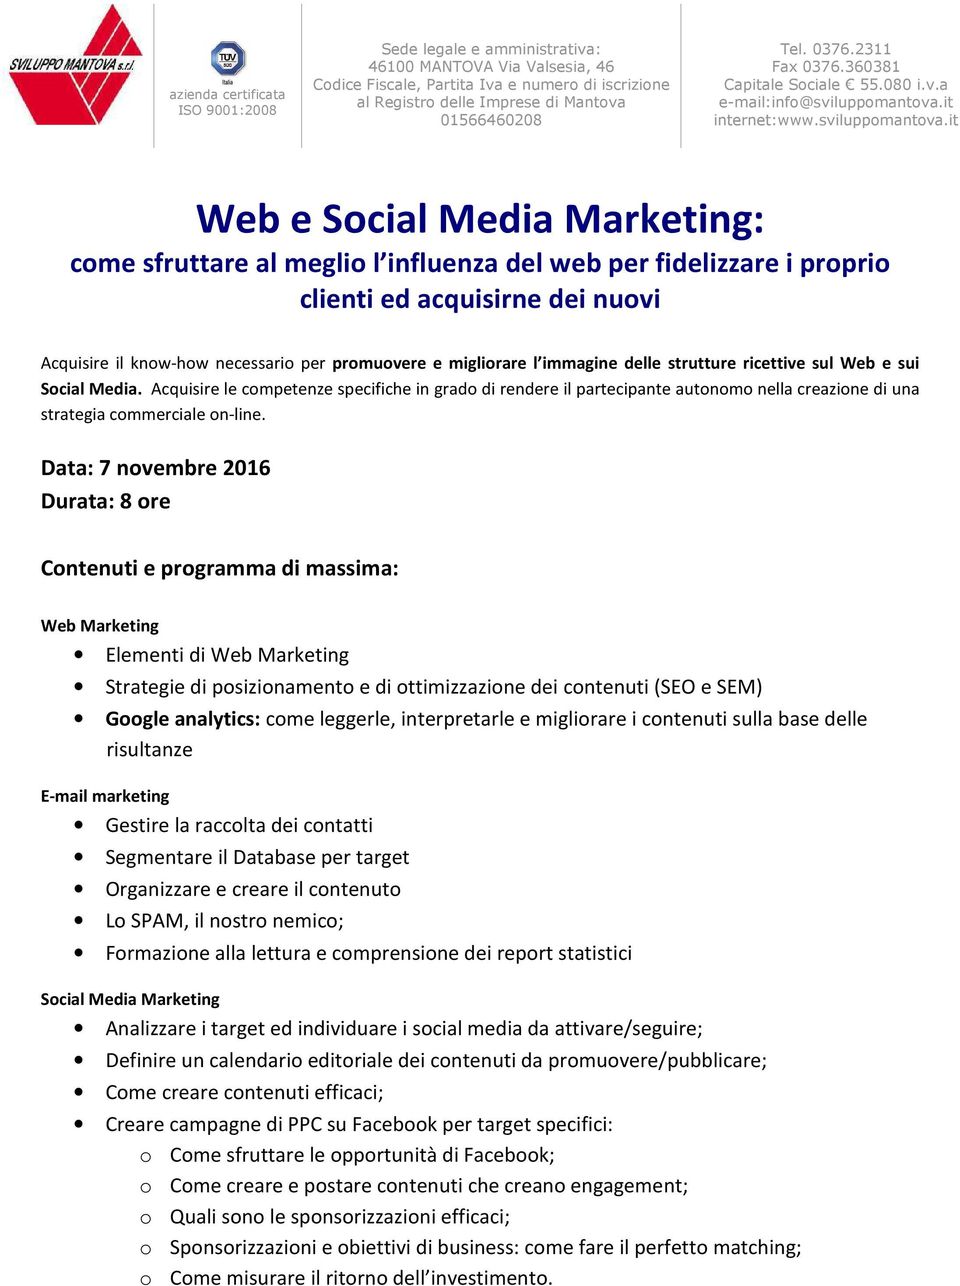 Data: 7 novembre 2016 Web Marketing Elementi di Web Marketing Strategie di posizionamento e di ottimizzazione dei contenuti (SEO e SEM) Google analytics: come leggerle, interpretarle e migliorare i